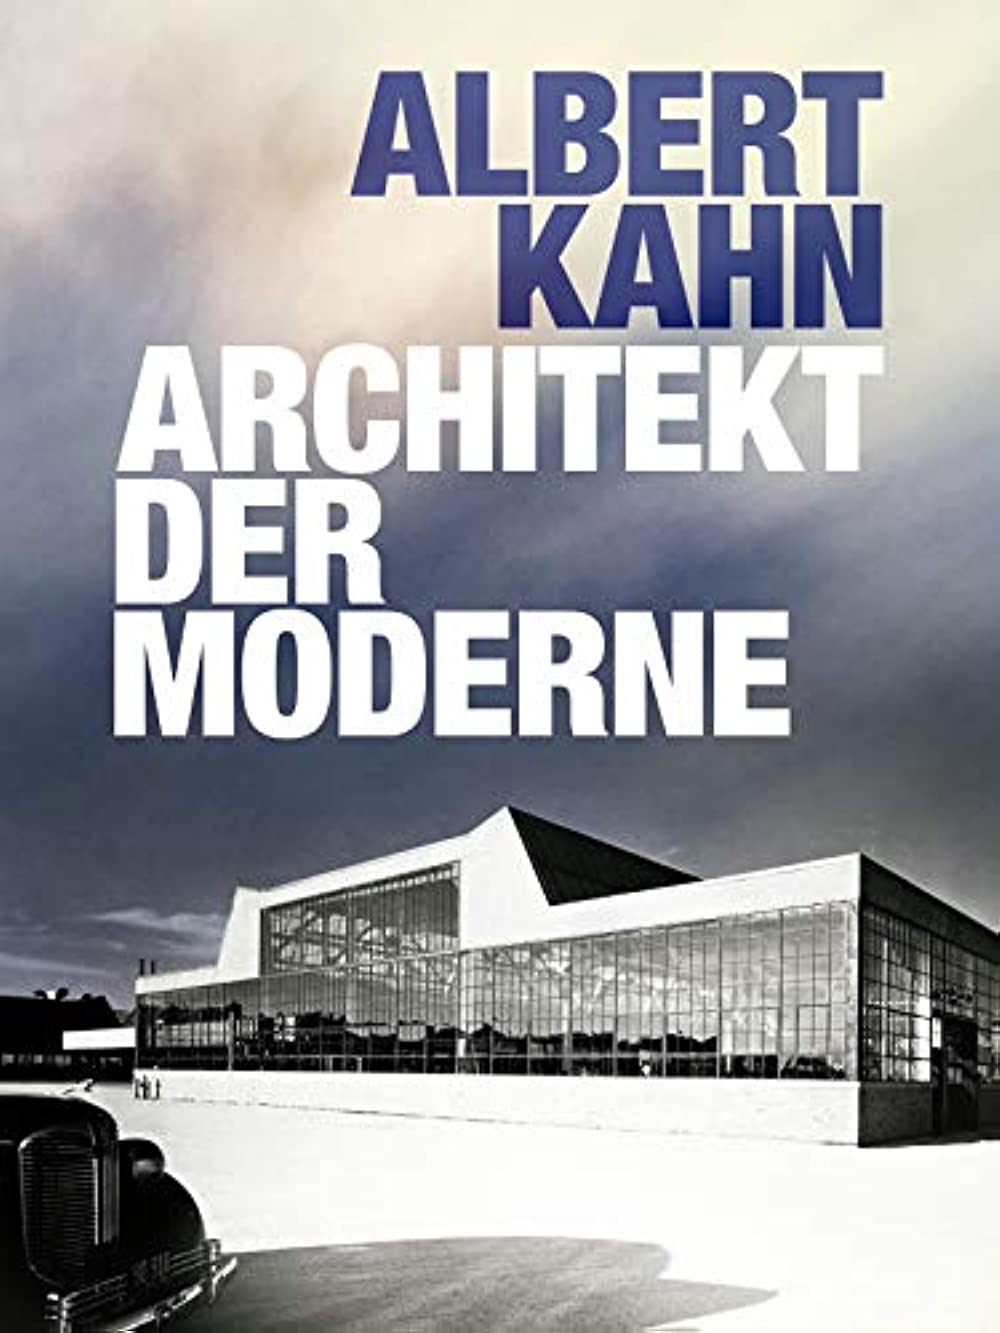 Filmbeschreibung zu Albert Kahn - Architekt der Moderne